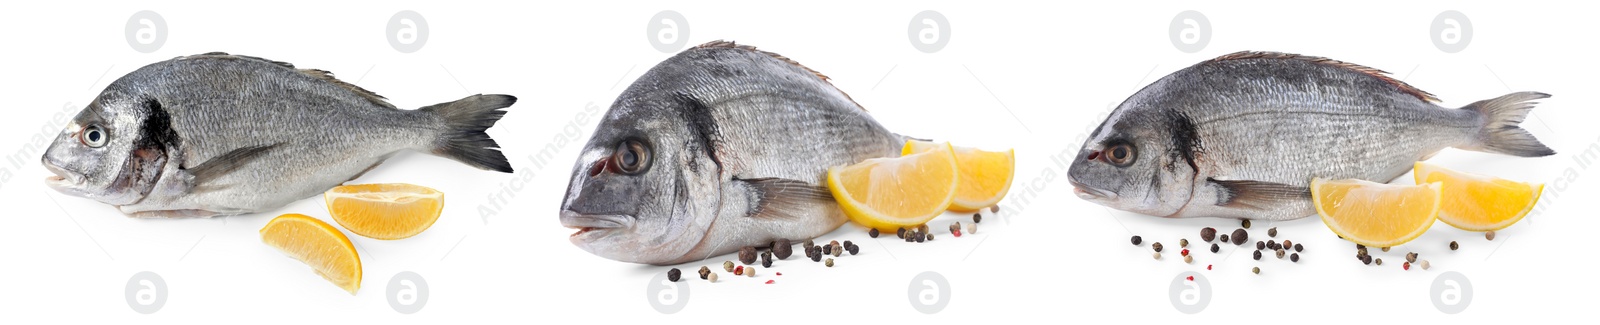 Image of Raw dorada fish, lemon and peppercorns isolated on white, set